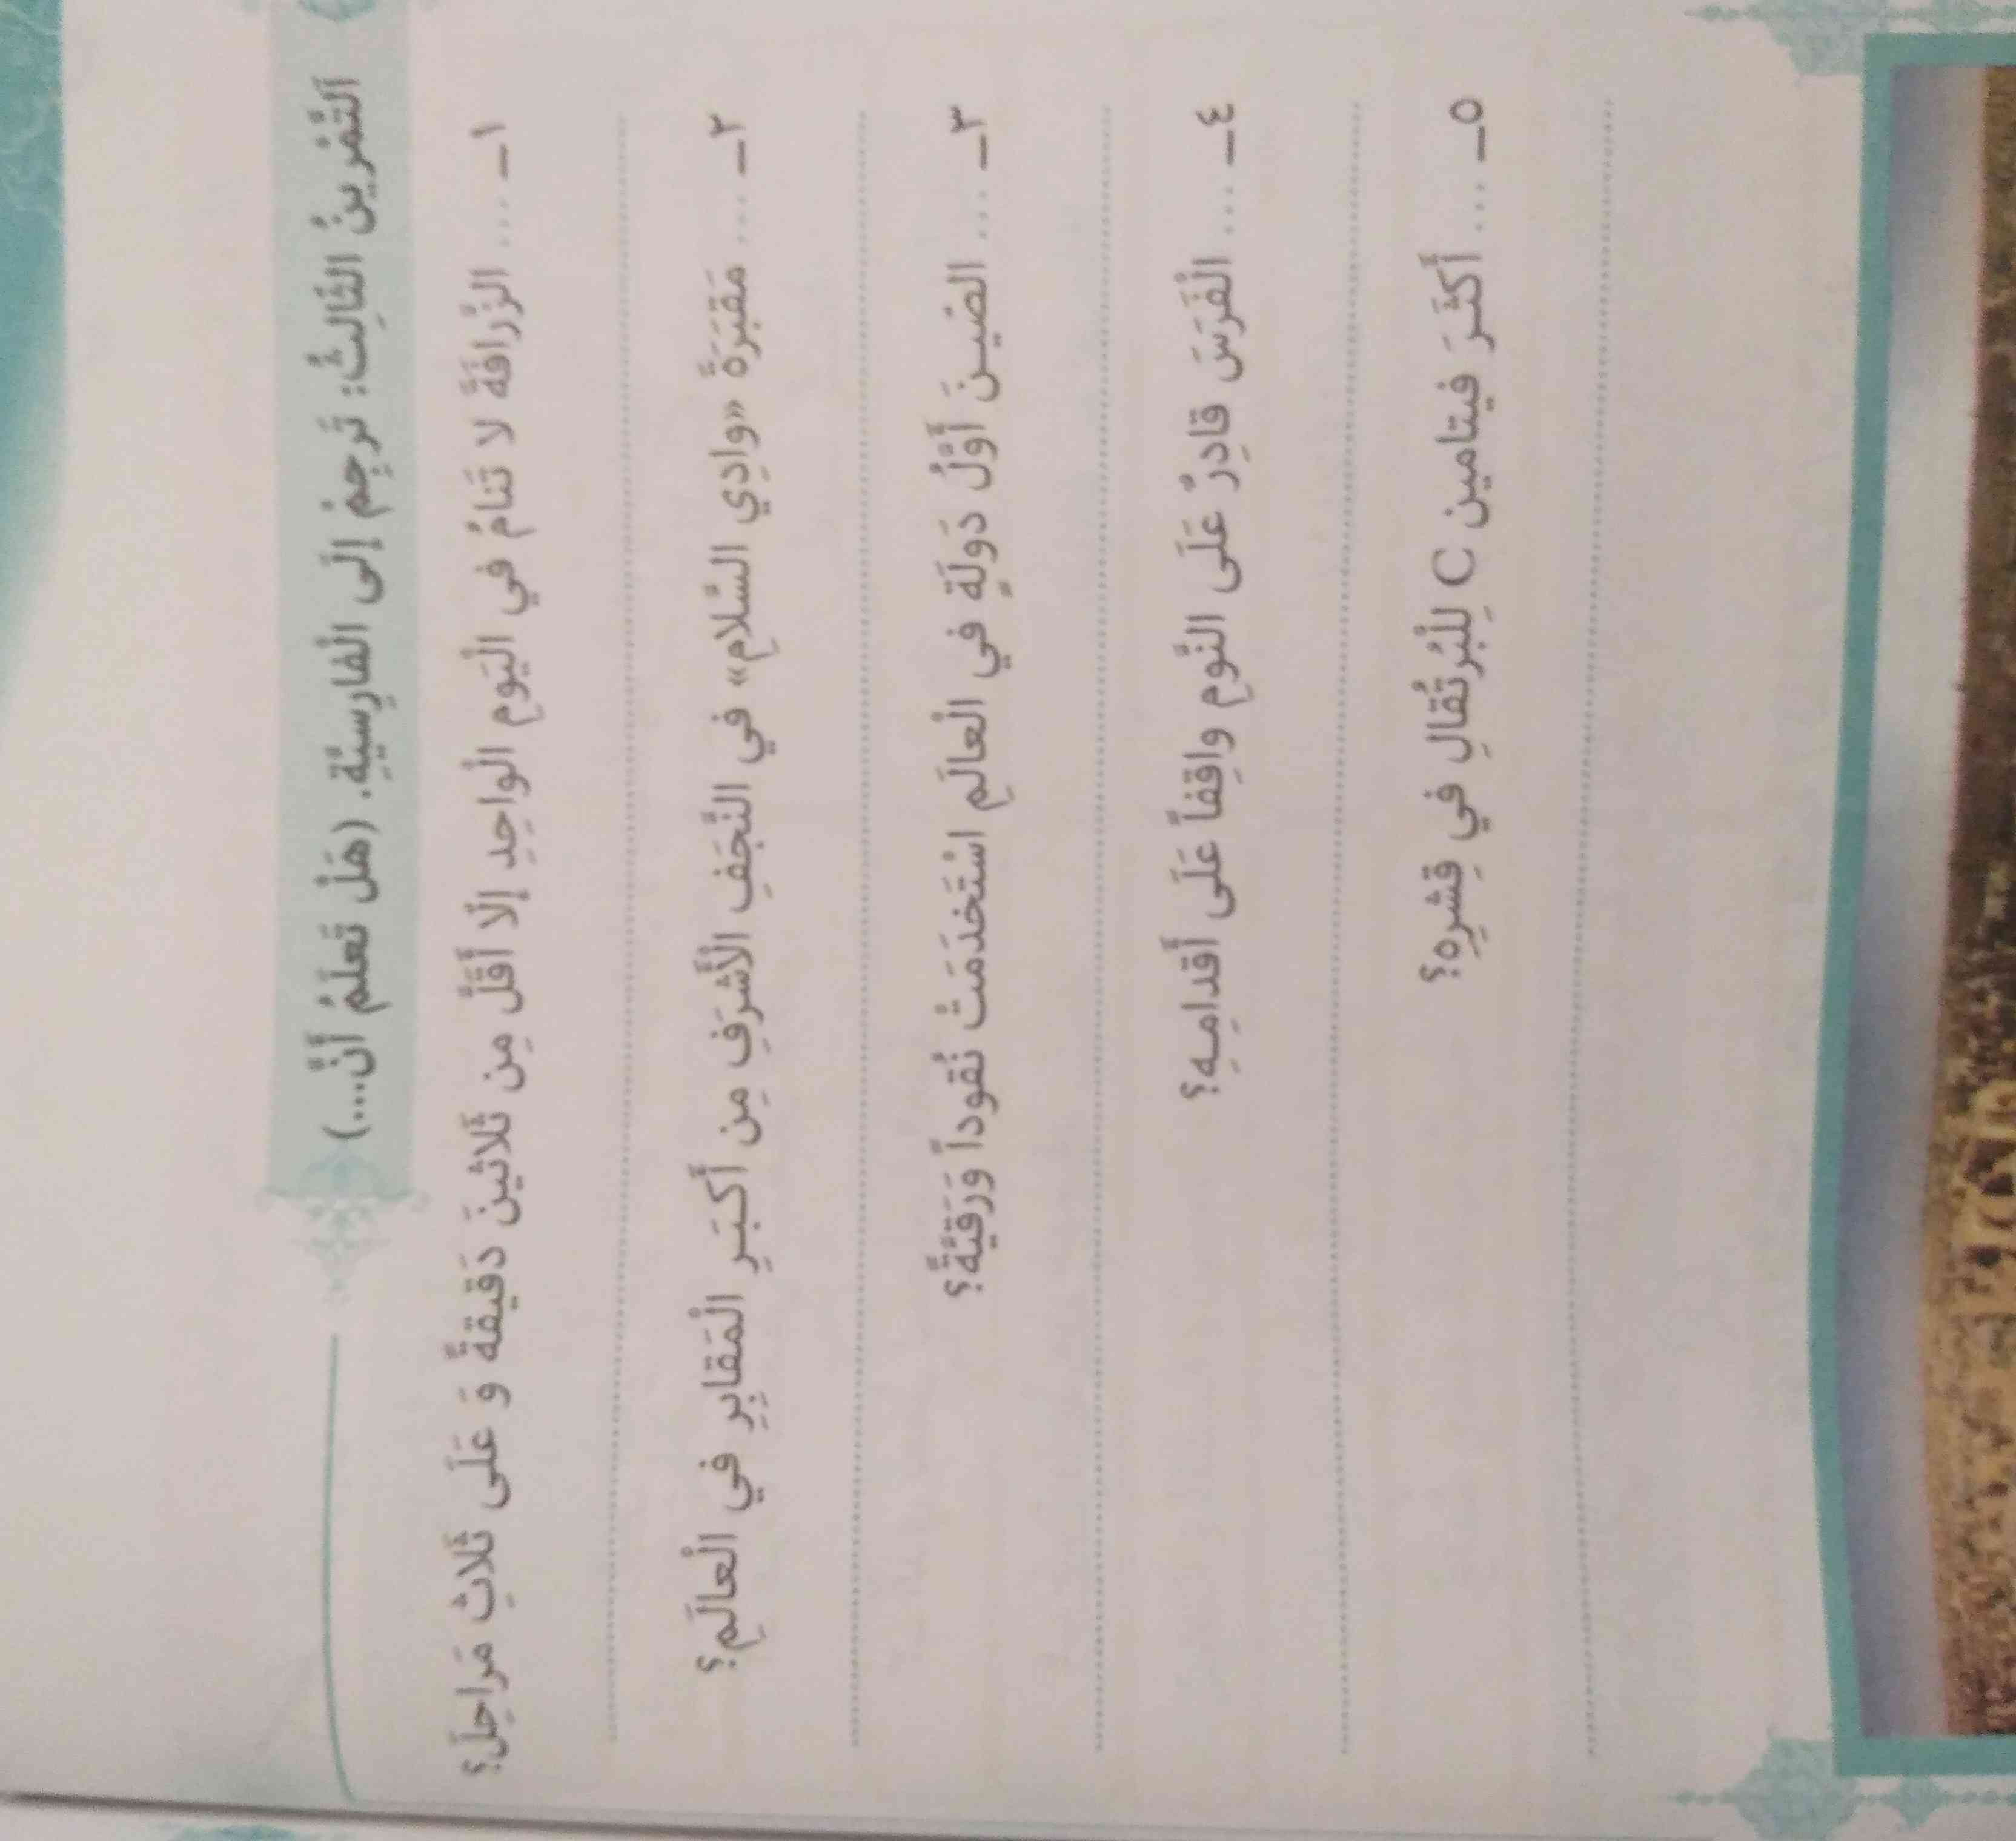 درس 4 عربی
